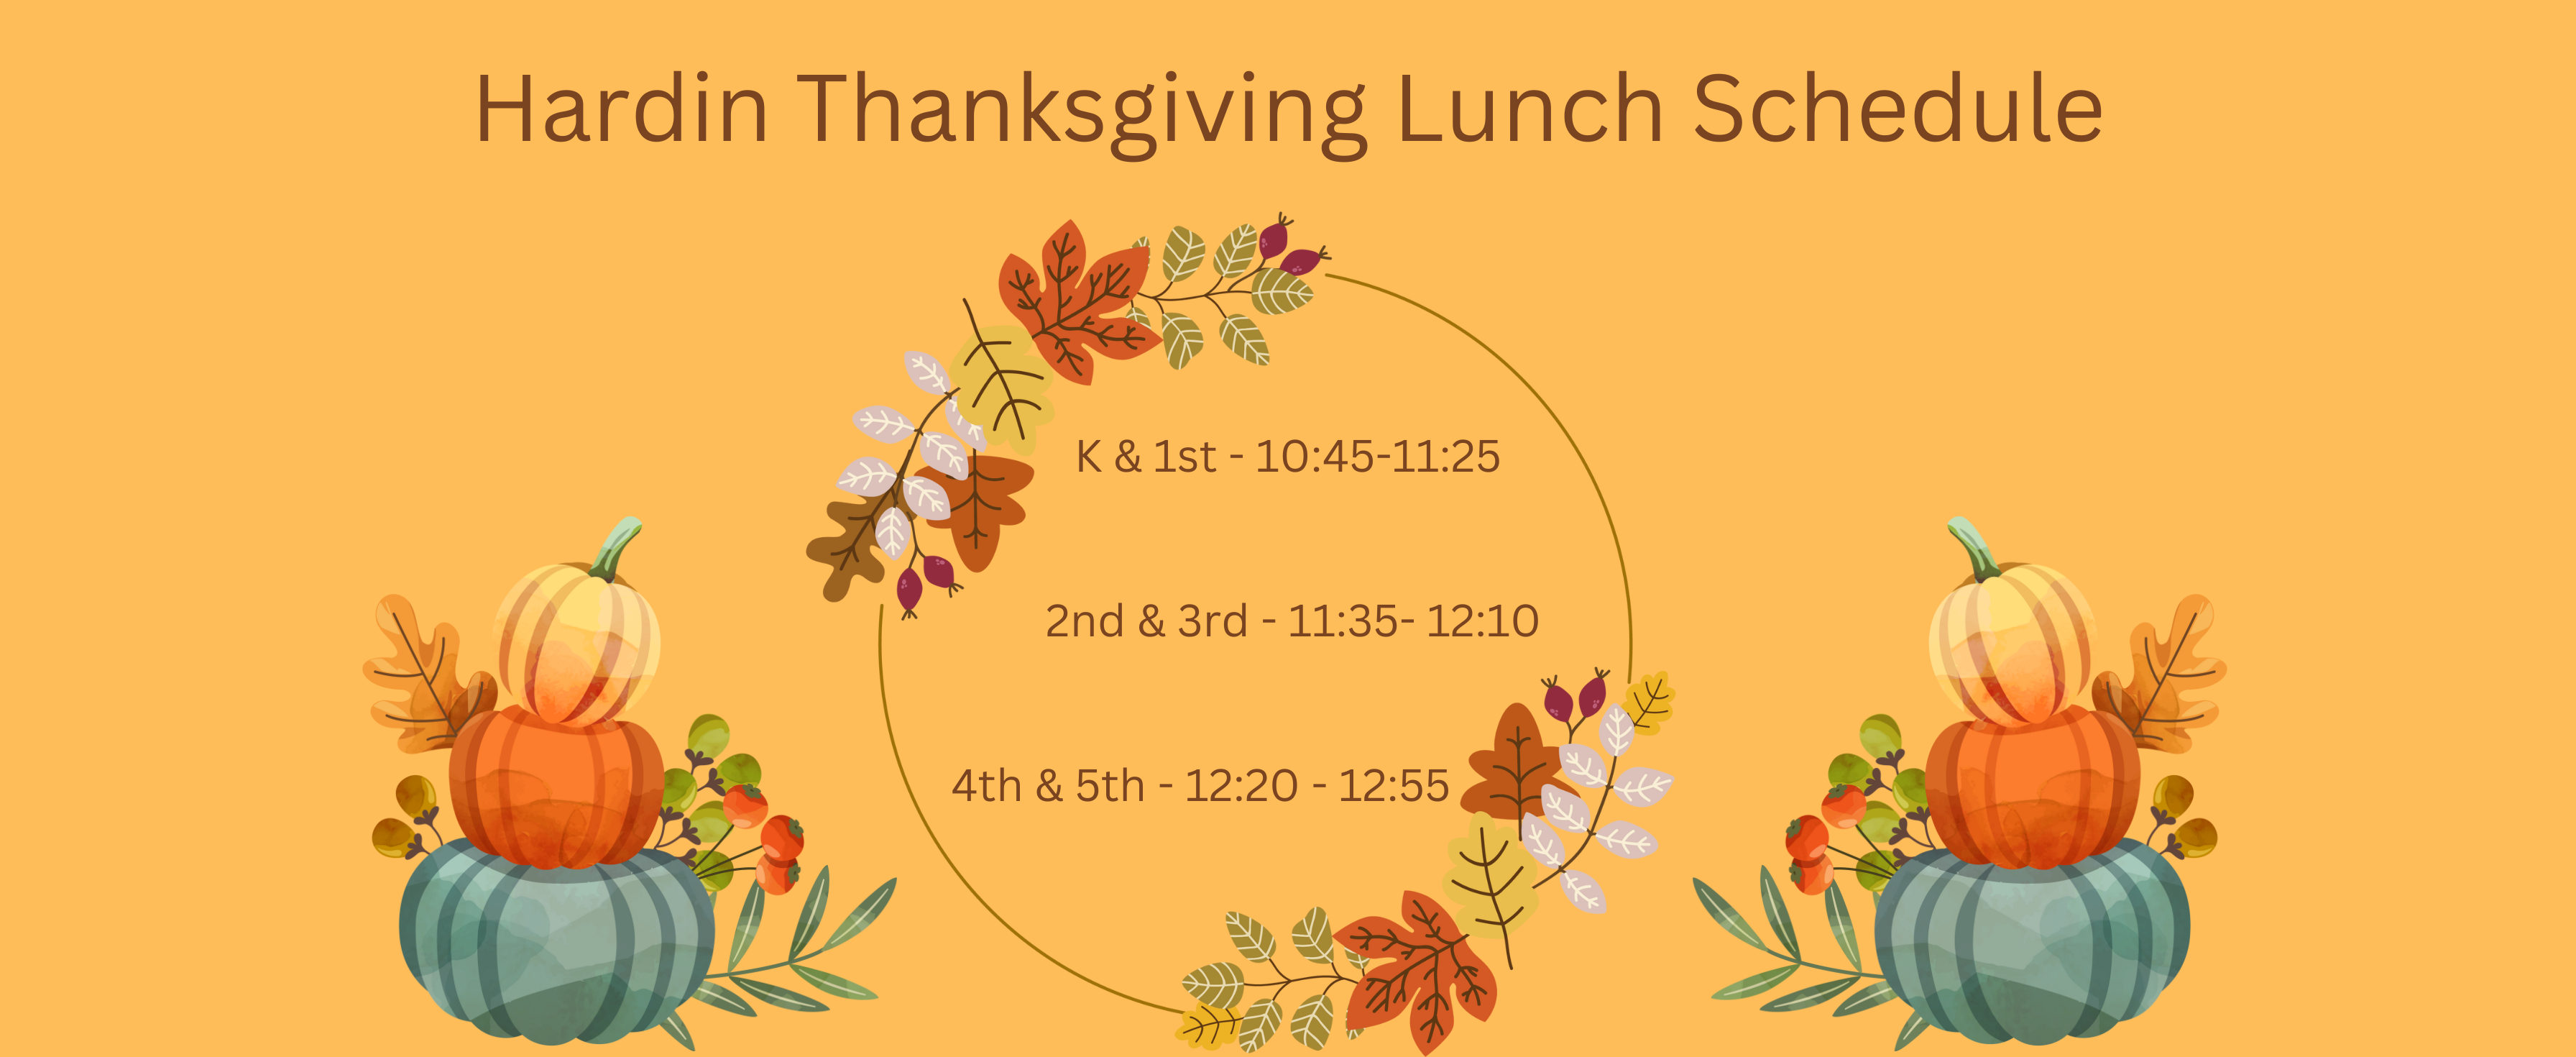 Thanksgiving Lunch Schedule